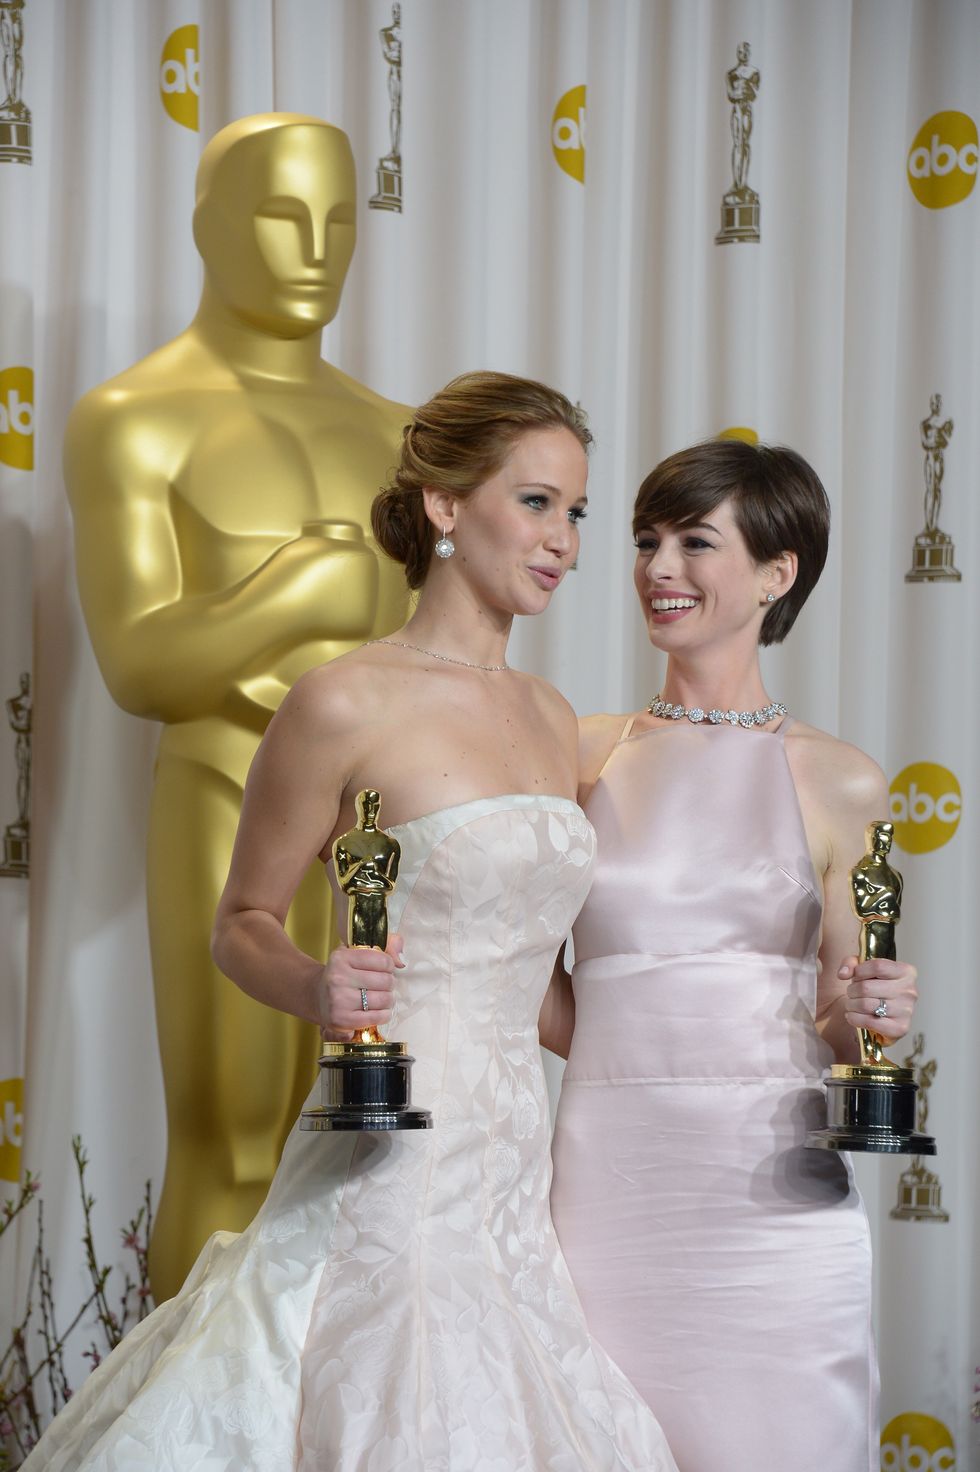 I migliori e peggiori look degli Academy Awards